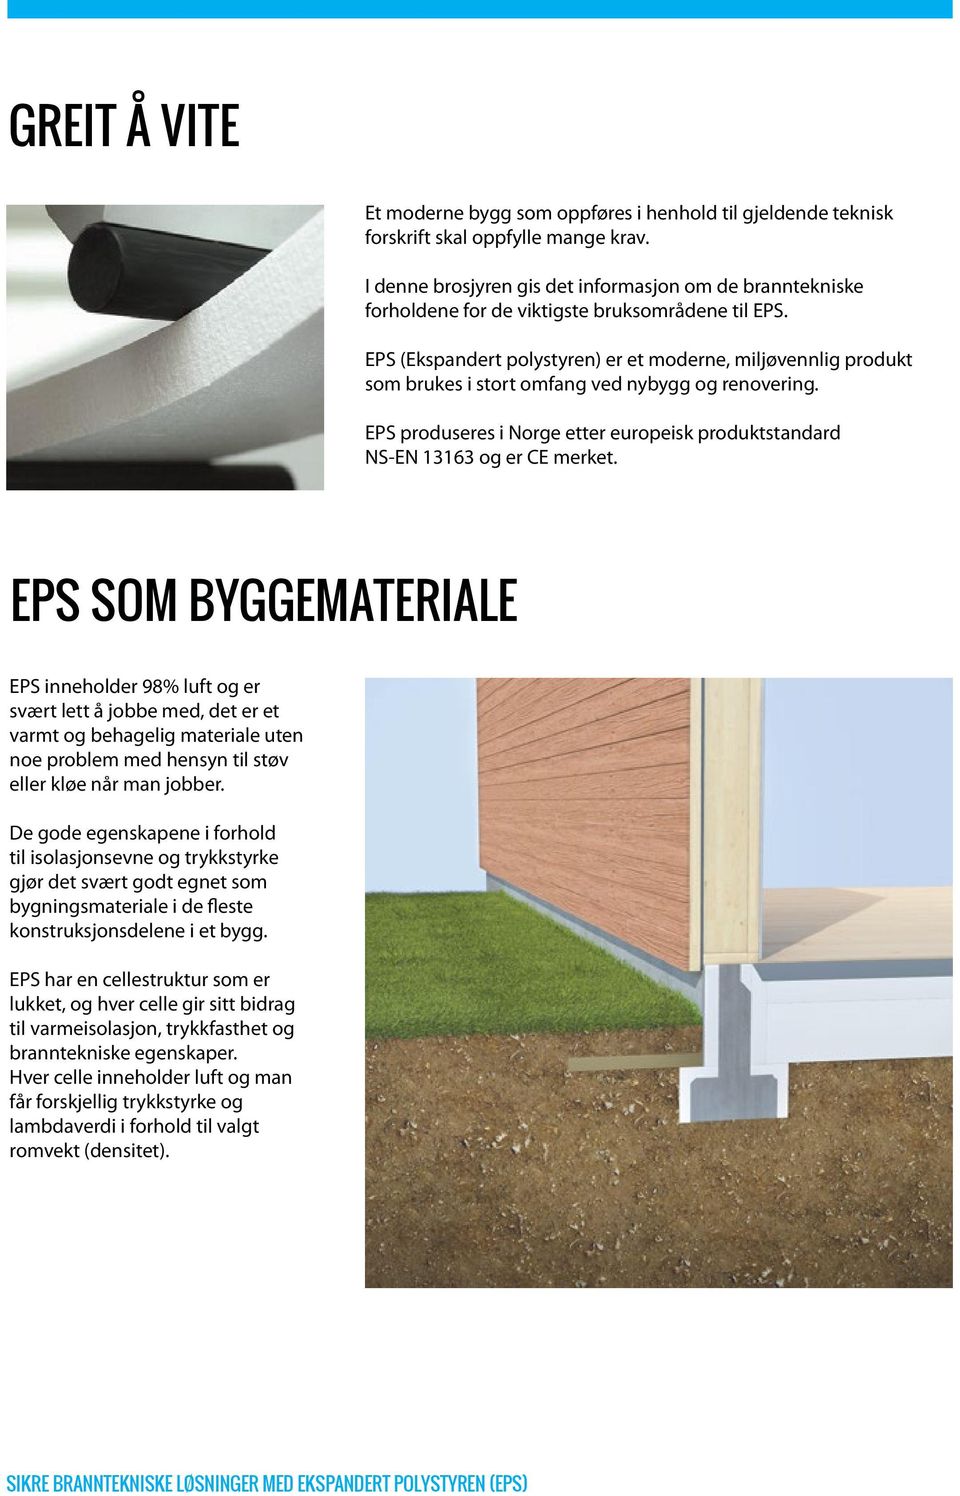 EPS (Ekspandert polystyren) er et moderne, miljøvennlig produkt som brukes i stort omfang ved nybygg og renovering. EPS produseres i Norge etter europeisk produktstandard NS-EN 13163 og er CE merket.